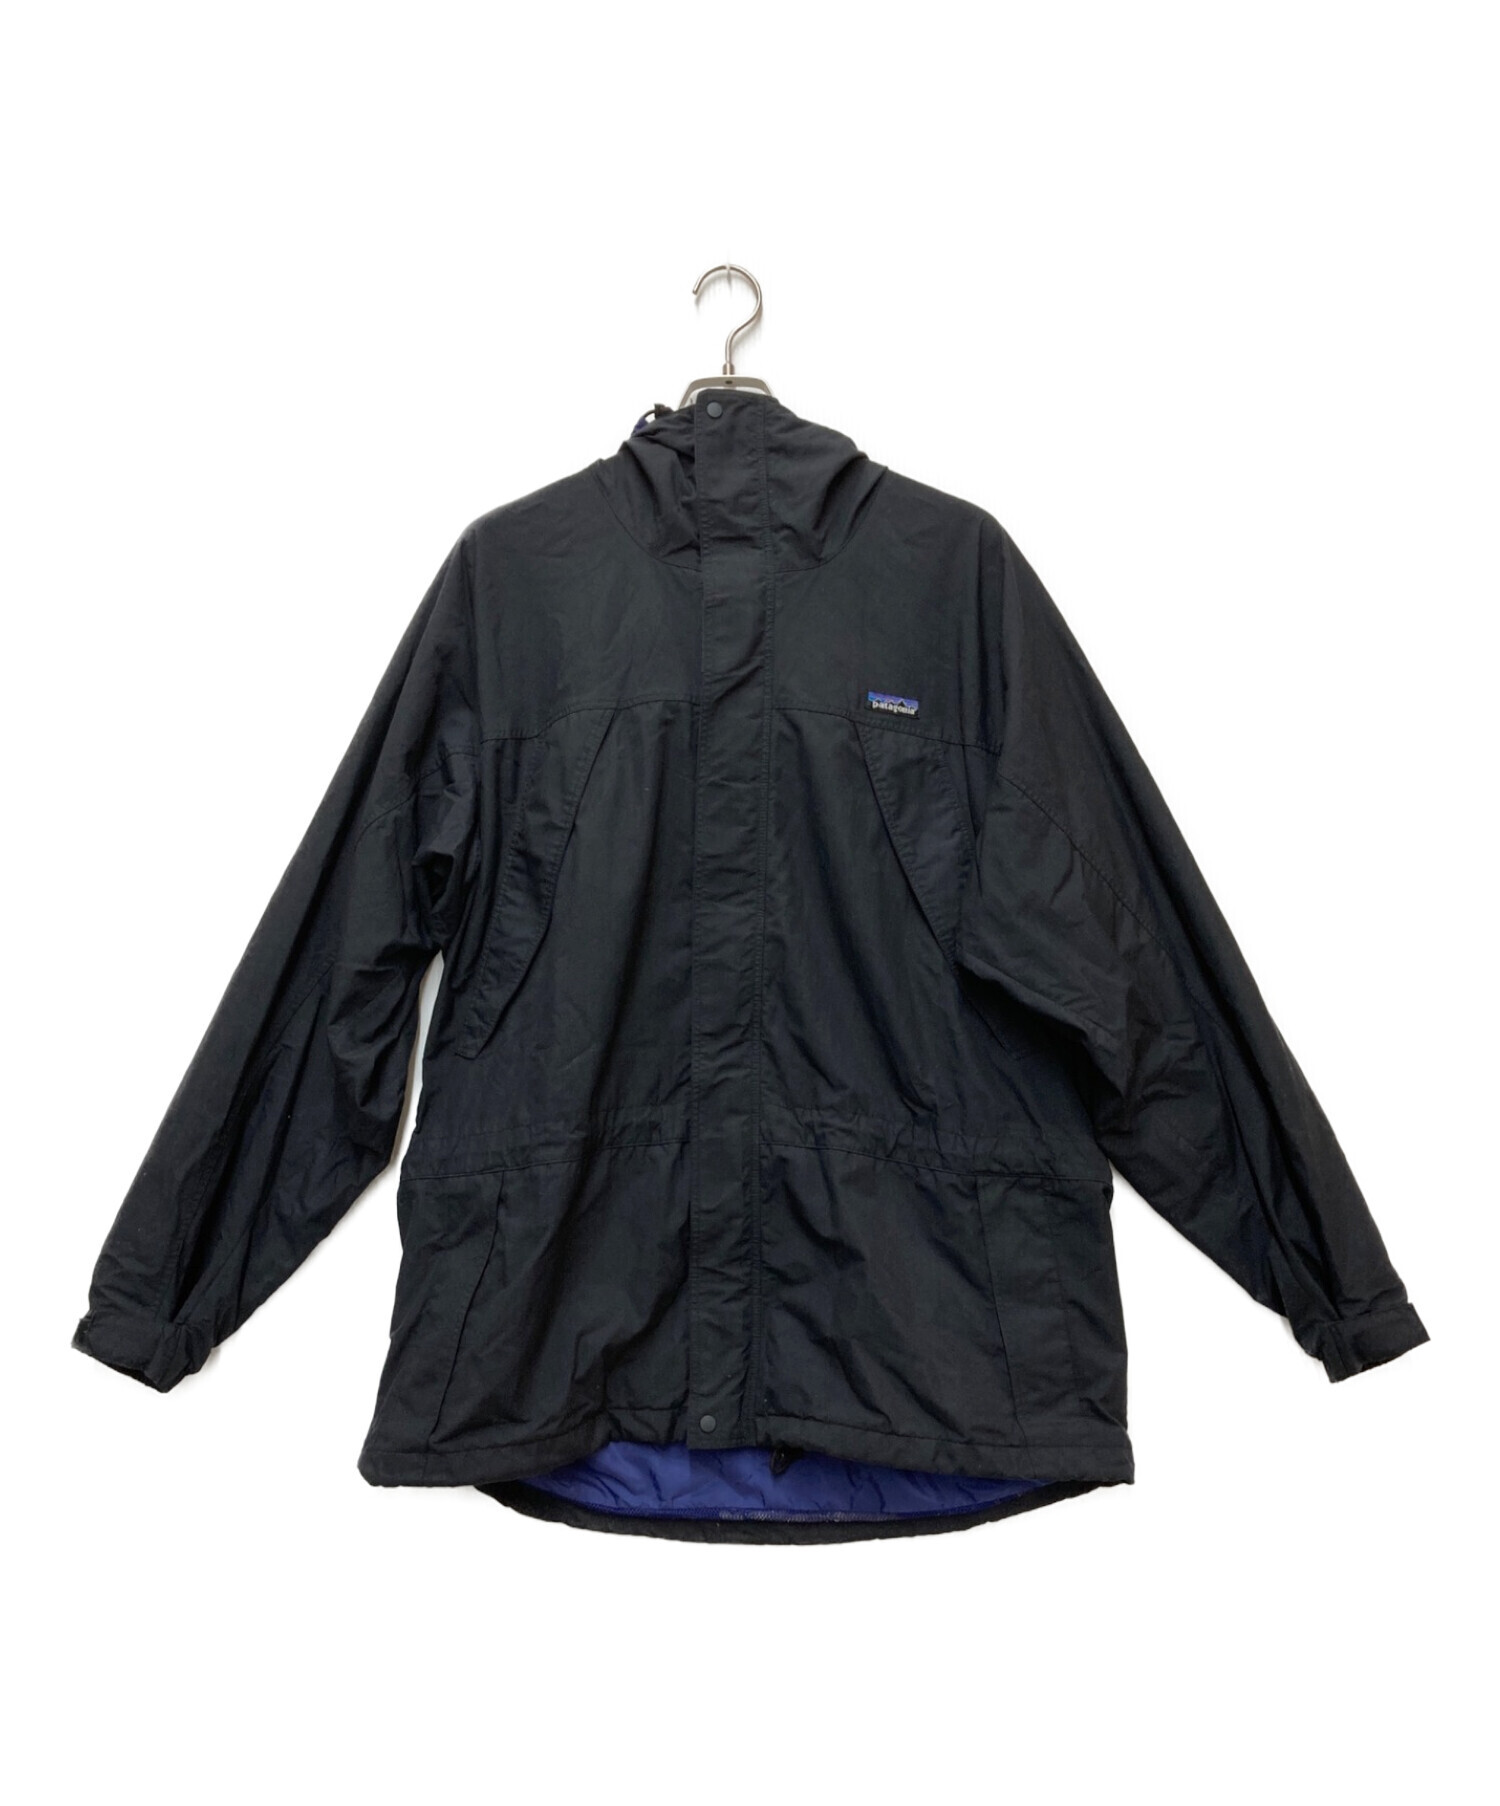 Patagonia (パタゴニア) ストームジャケット ブラック サイズ:L